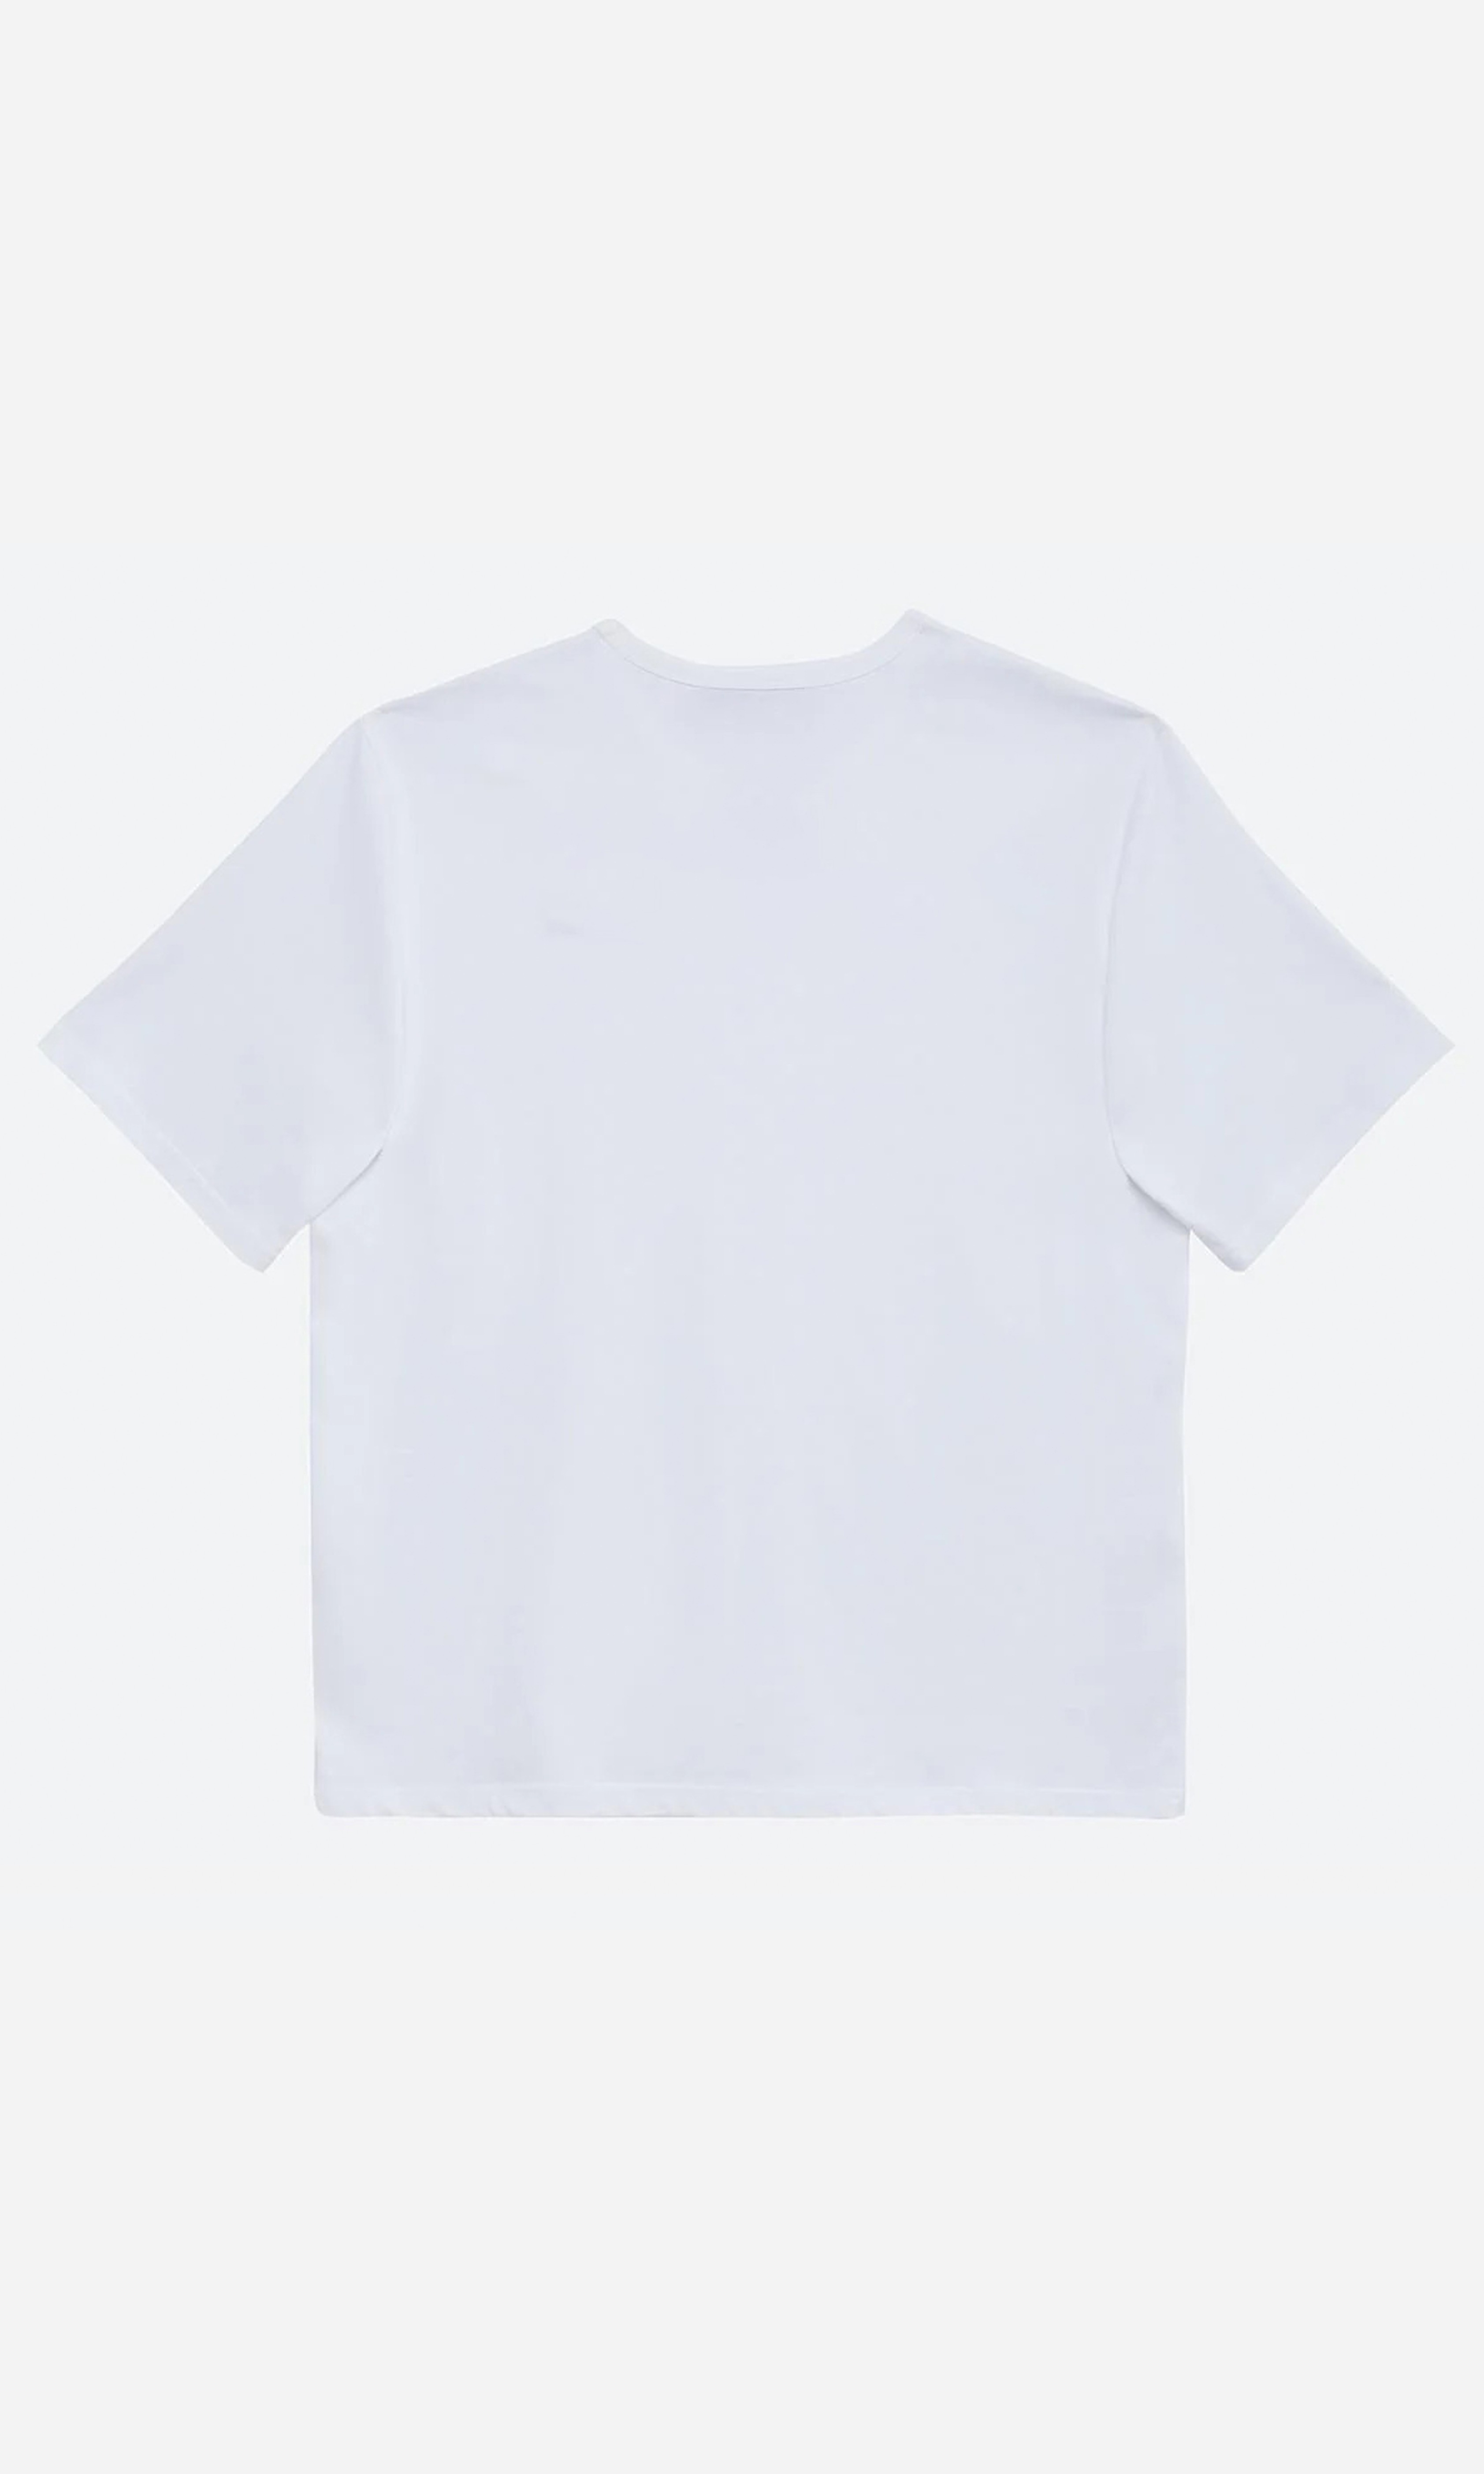 3010 - Baskılı Oversize Unisex T-Shirt - VOU Club - Beyaz